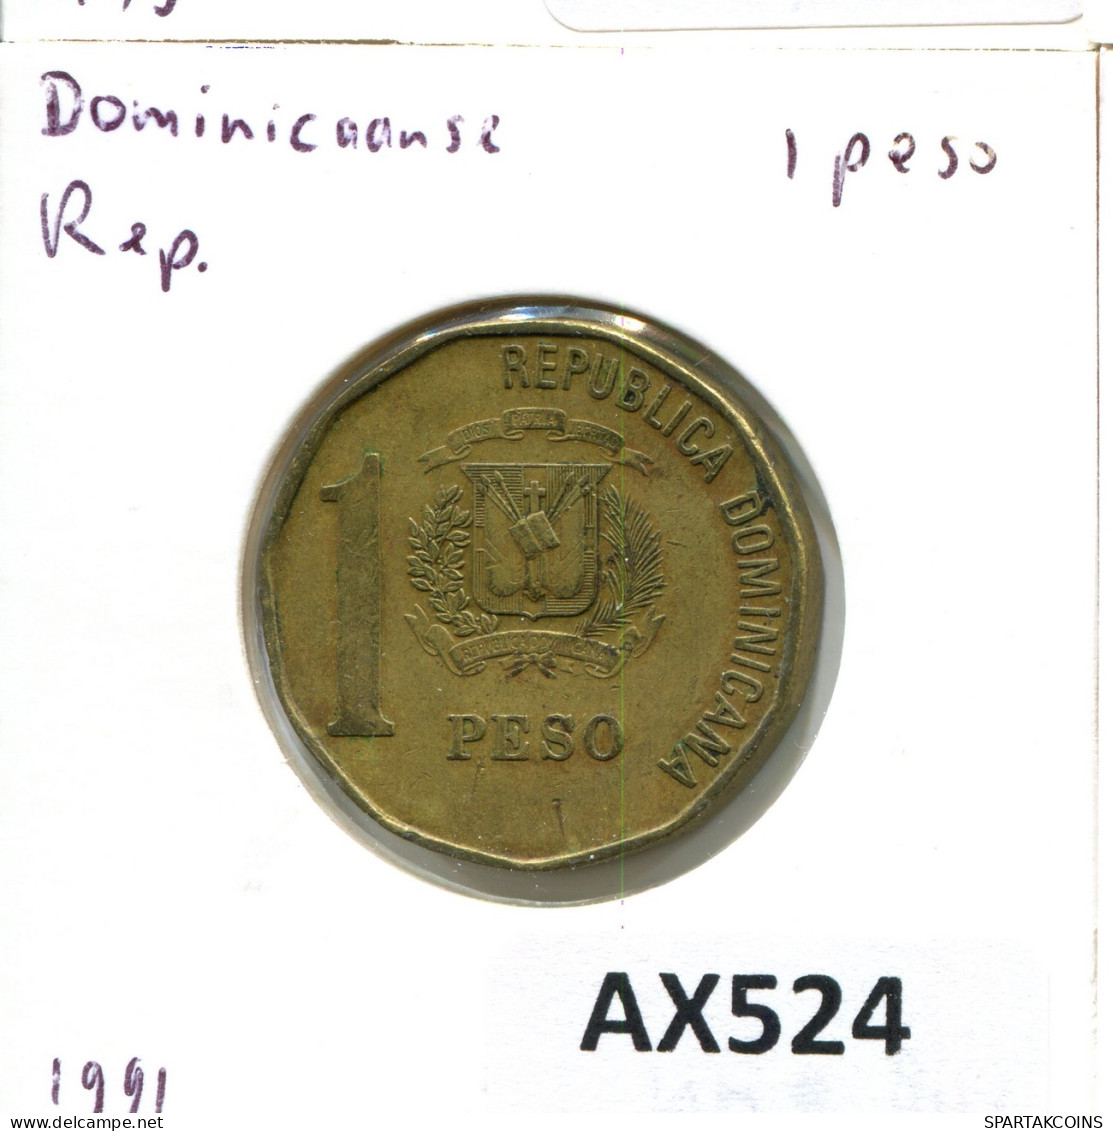 1 PESO 1991 DOMINICANA Coin #AX524.U - Dominicana